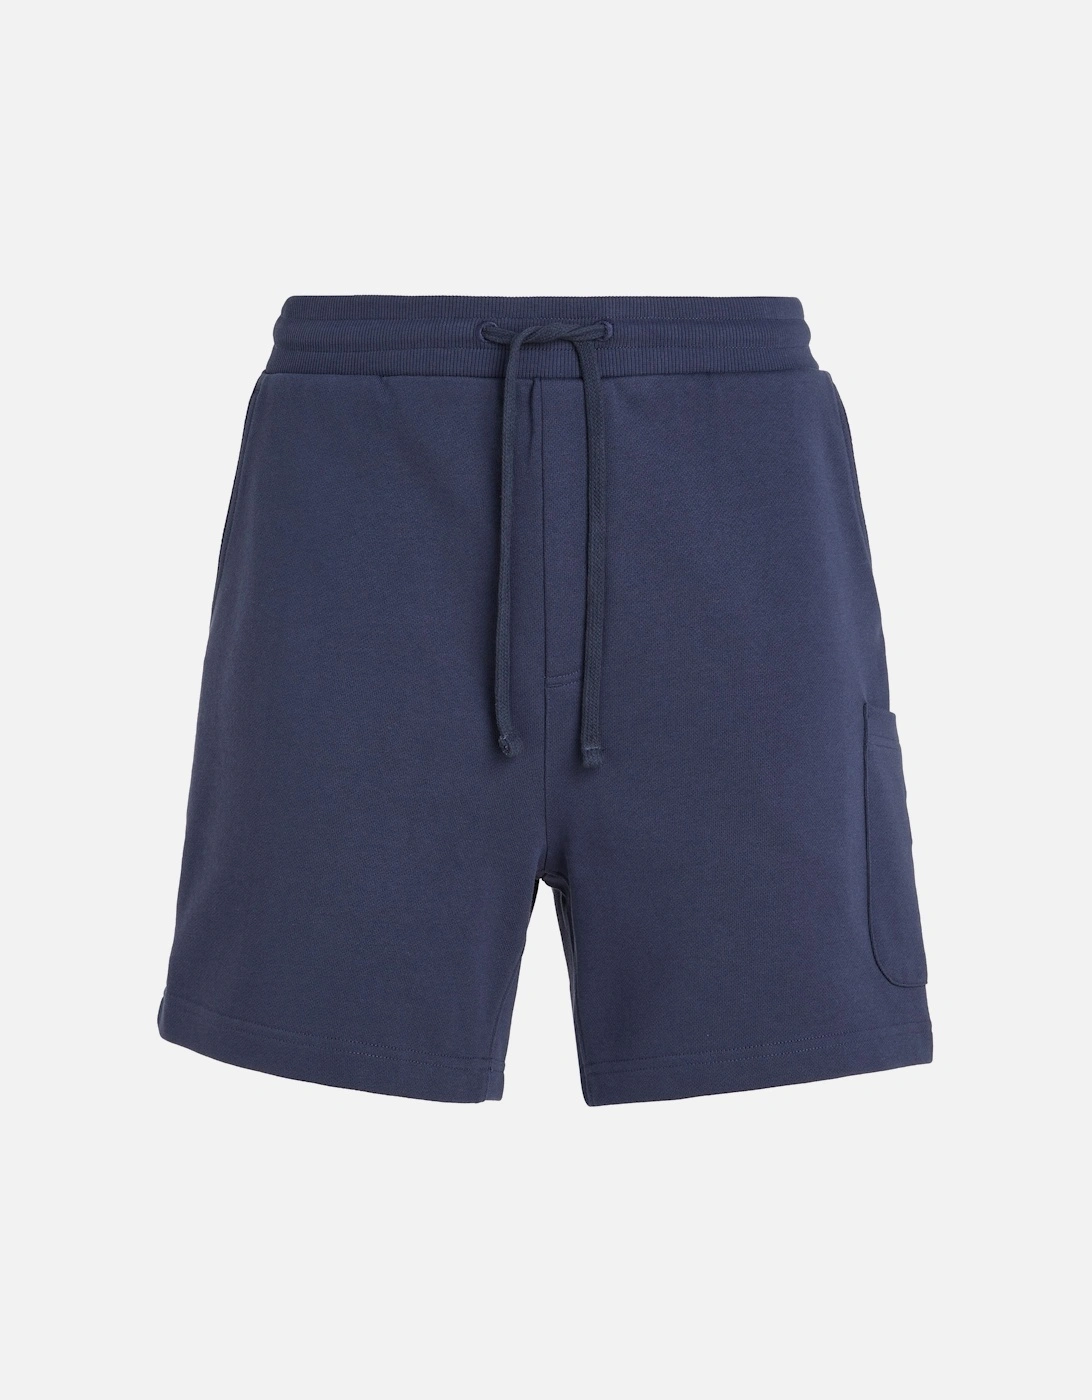 Mens Cargo Beach Shorts (Navy), 7 of 6